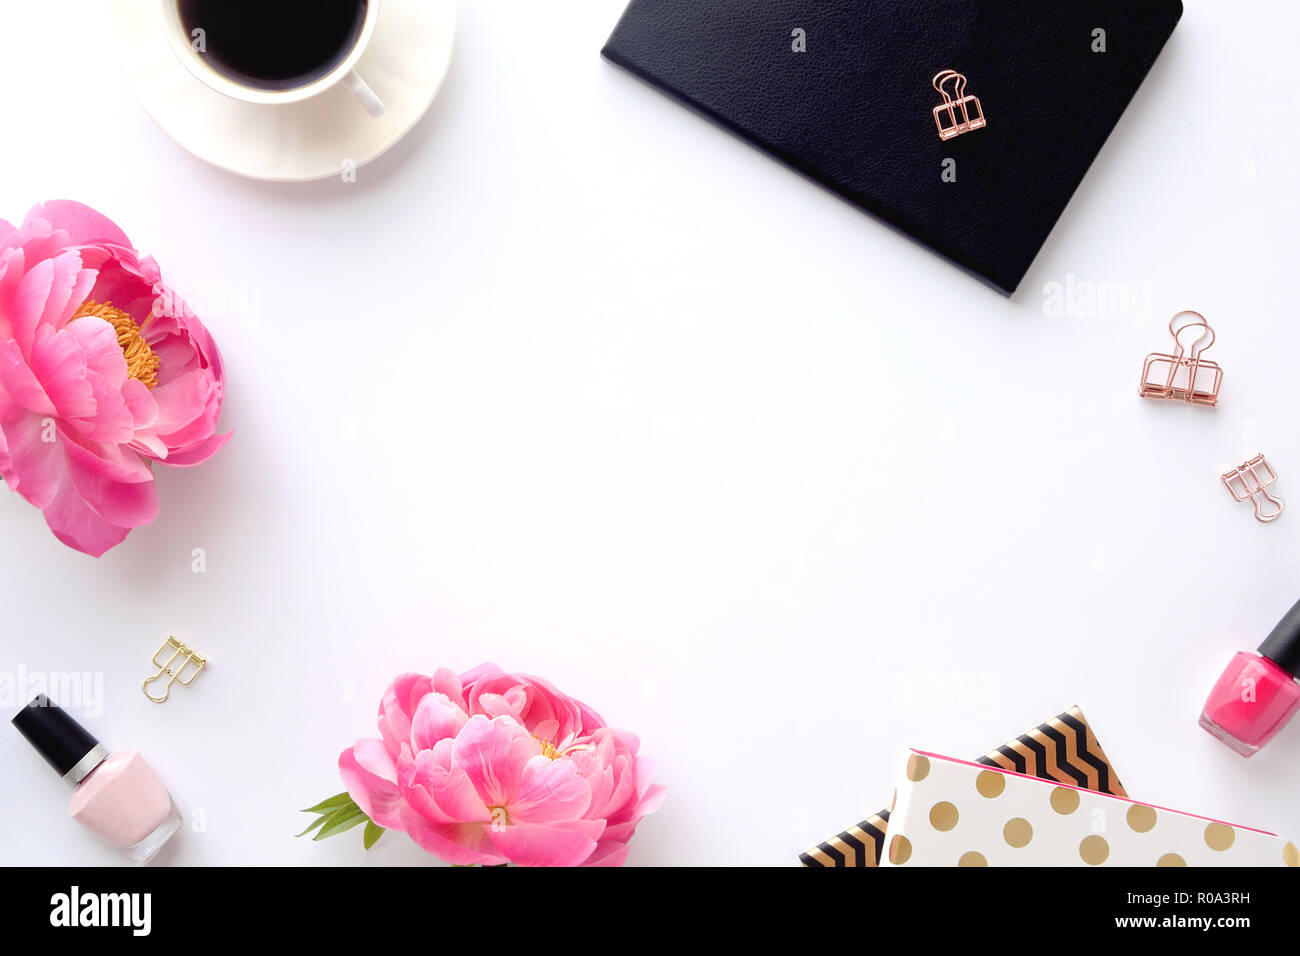 Femminile, foto in stile con il rosa peonie e accessori da scrivania. Flatlay. Per i blogger e le imprese creative. Con uno spazio bianco per il testo o per prodotto. Foto Stock